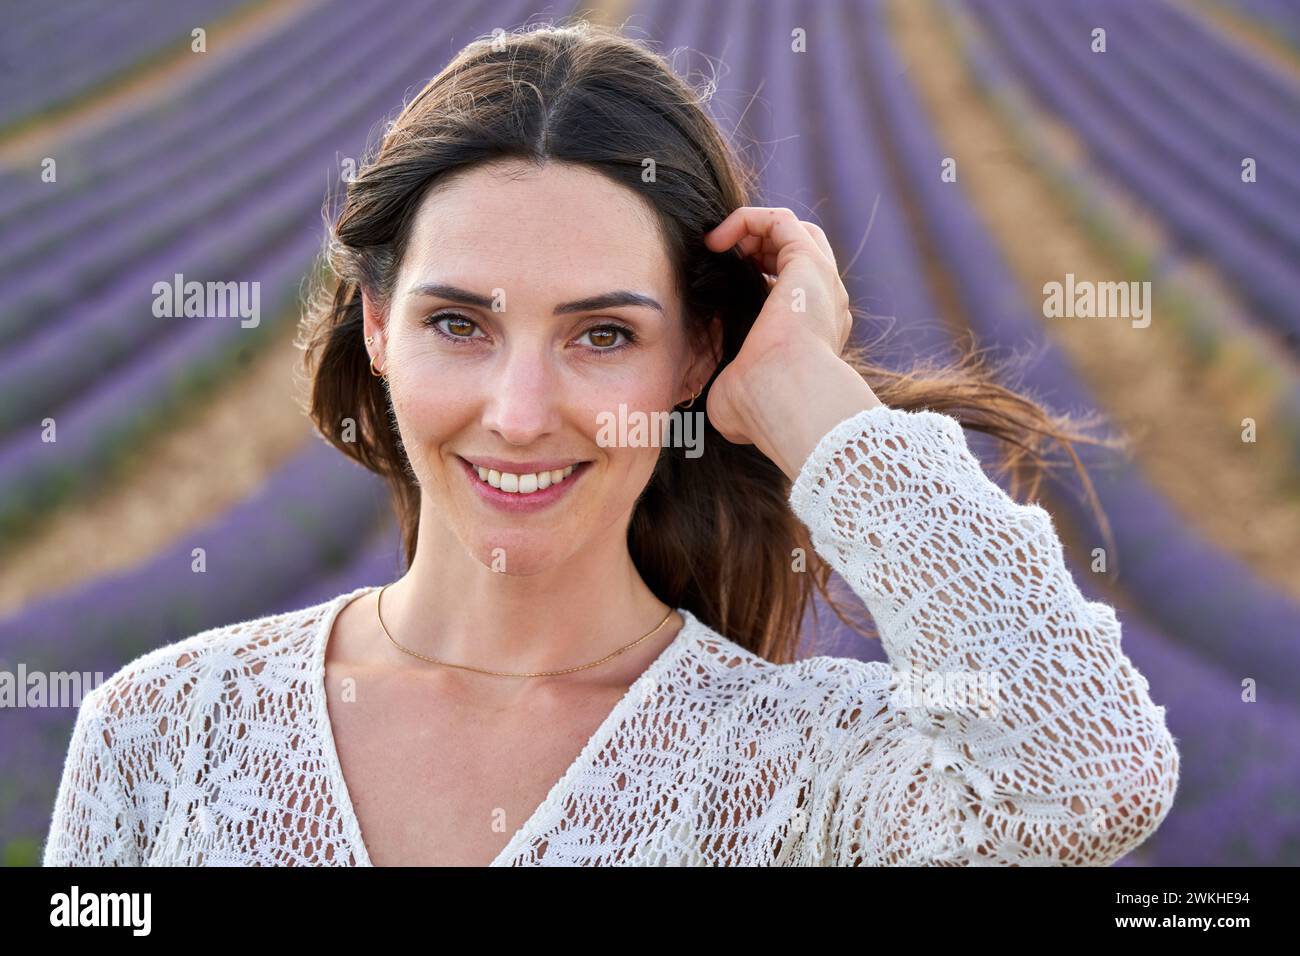 30-35 Jahre altes Mädchen, Anbau von Lavendel, blühende Lavendel, Valensole, Alpes-de-Haute-Provence, Provence-Alpes-Côte d'Azur, Frankreich, Europa Stockfoto